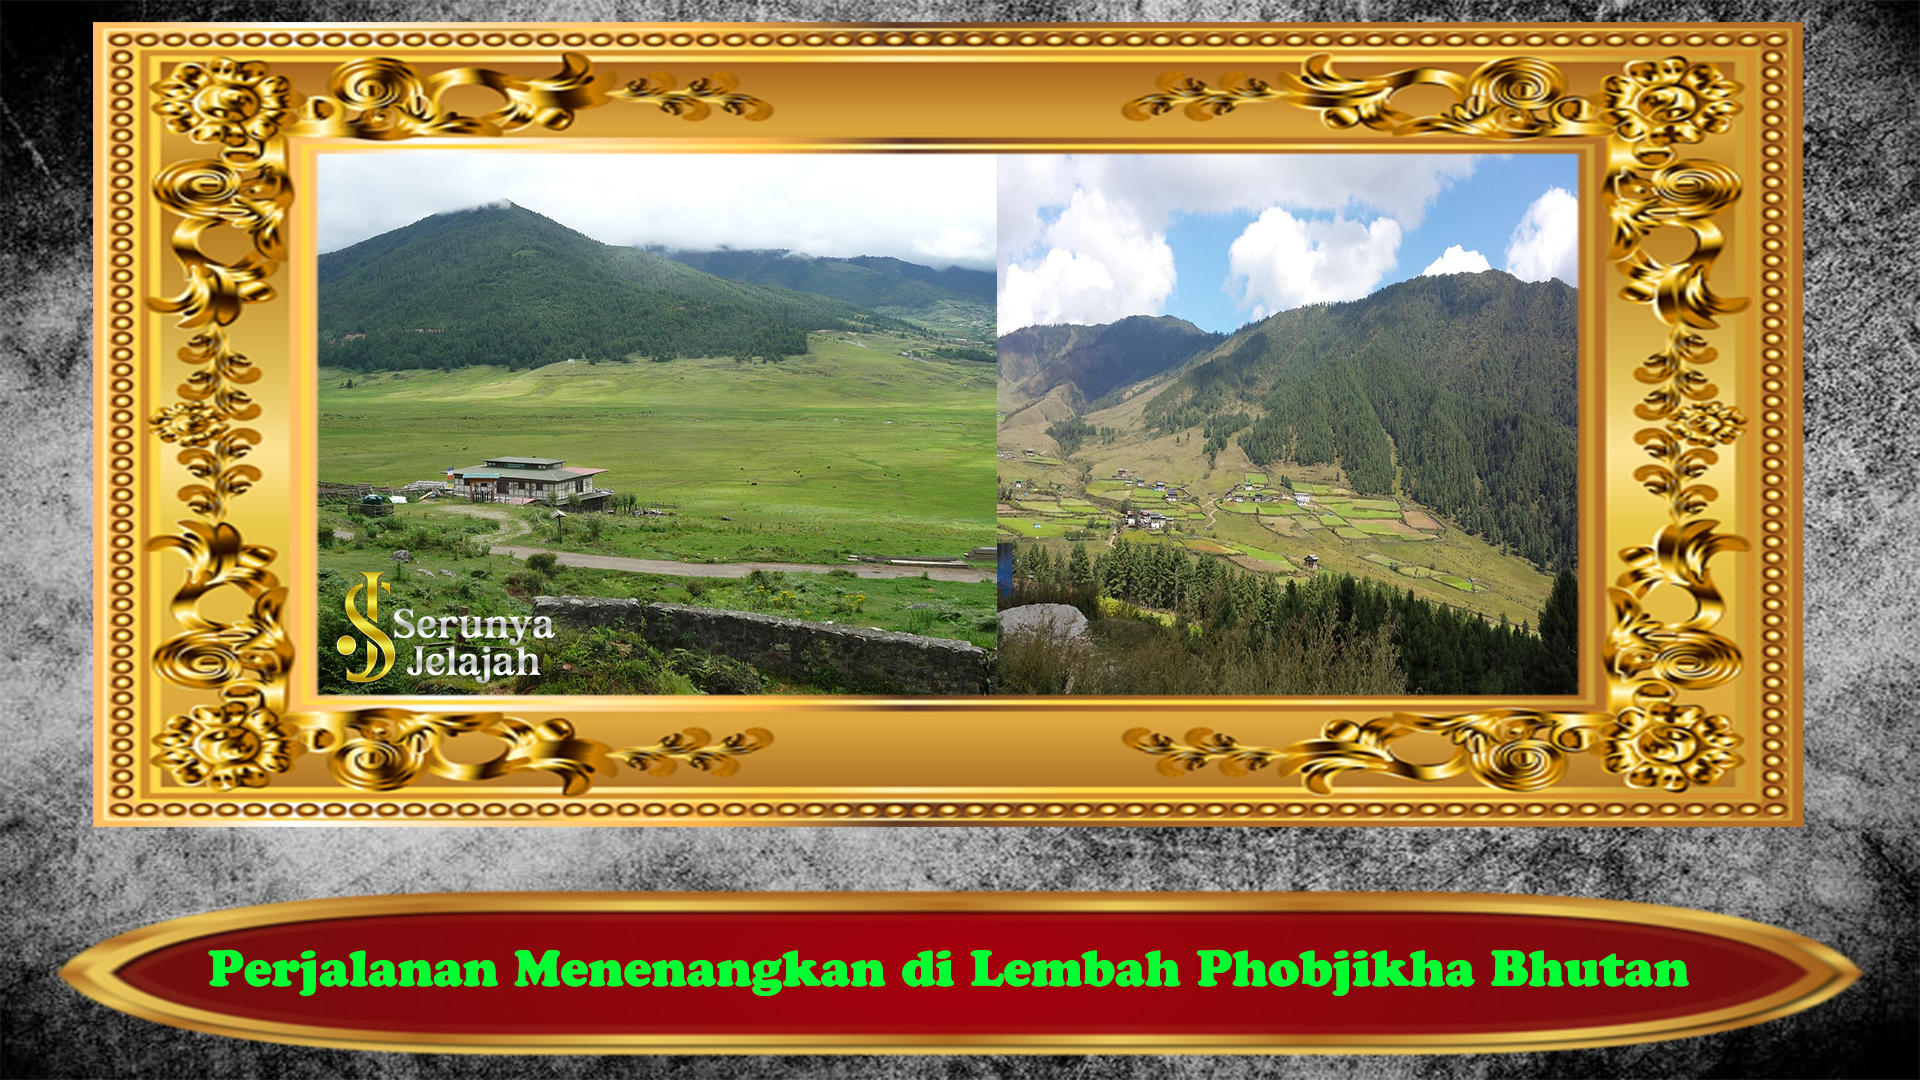 Perjalanan Menenangkan di Lembah Phobjikha Bhutan